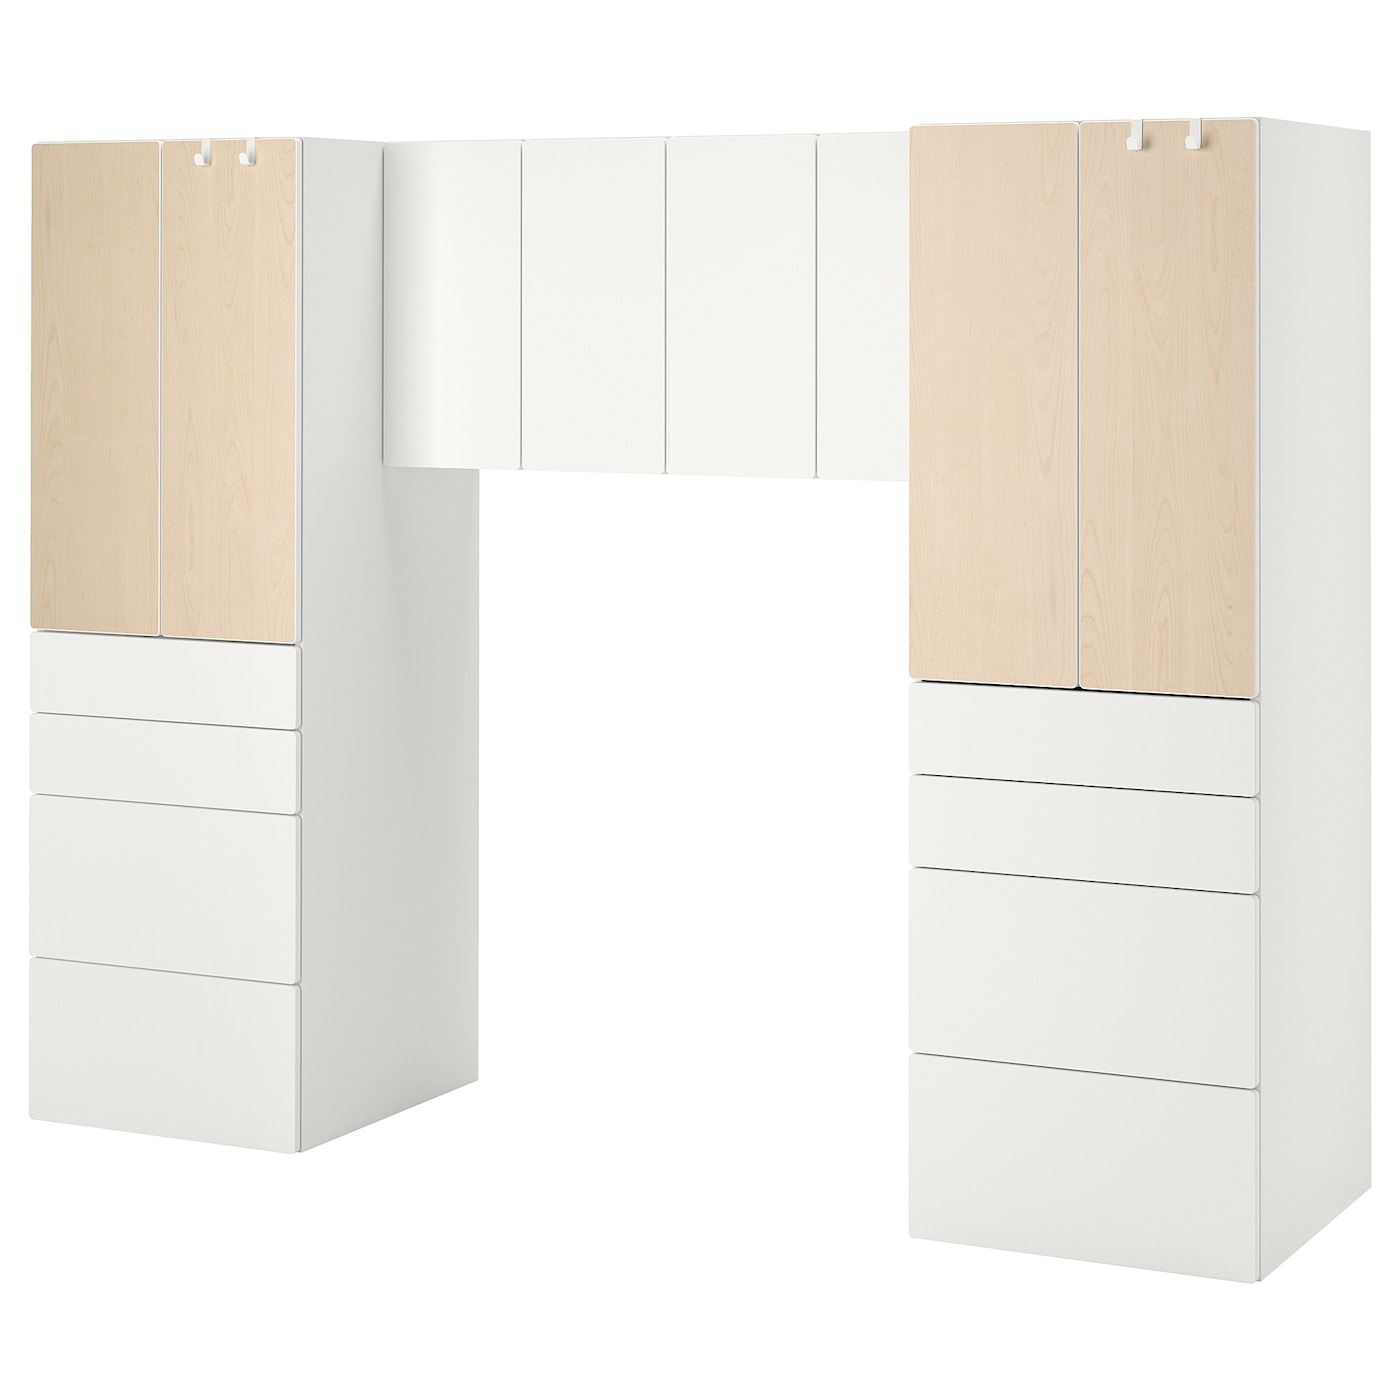 Детская гардеробная комбинация - IKEA PLATSA SMÅSTAD/SMASTAD, 181x57x240см, белый/светло-коричневый, ПЛАТСА СМОСТАД ИКЕА